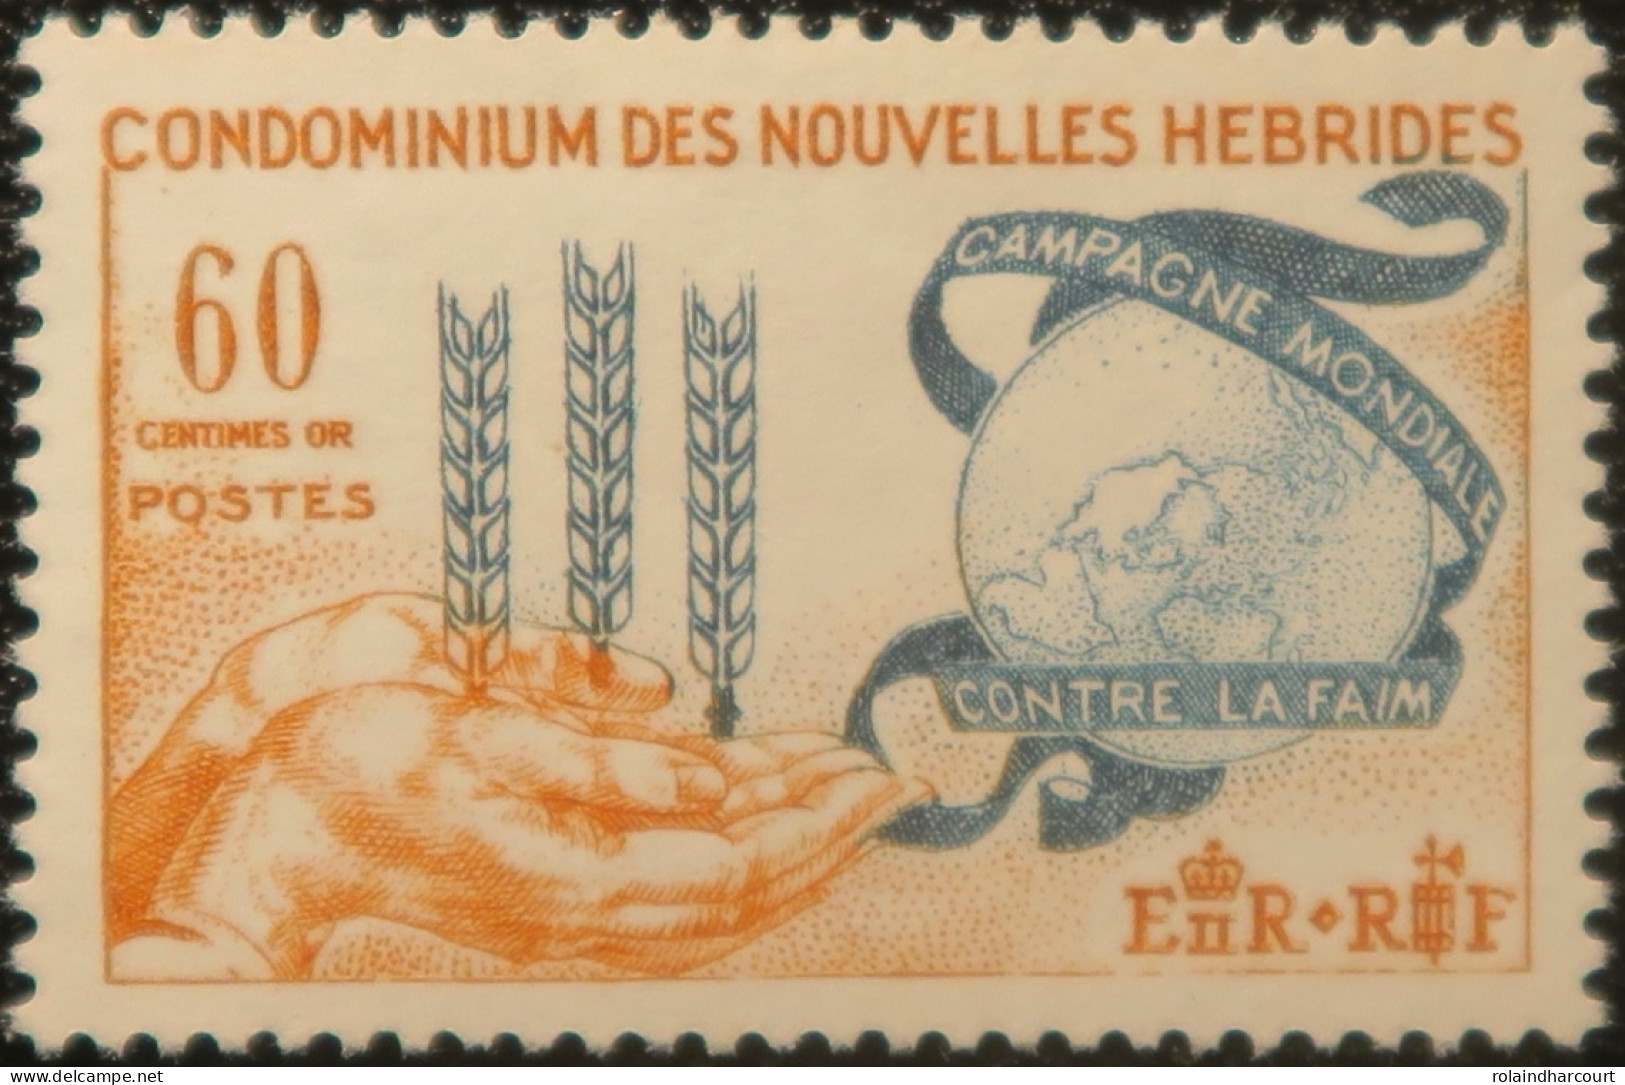 R2253/672 - NOUVELLES HEBRIDES - 1963 - Campagne Mondiale Contre La Faim - N°197 NEUF* - Nuevos